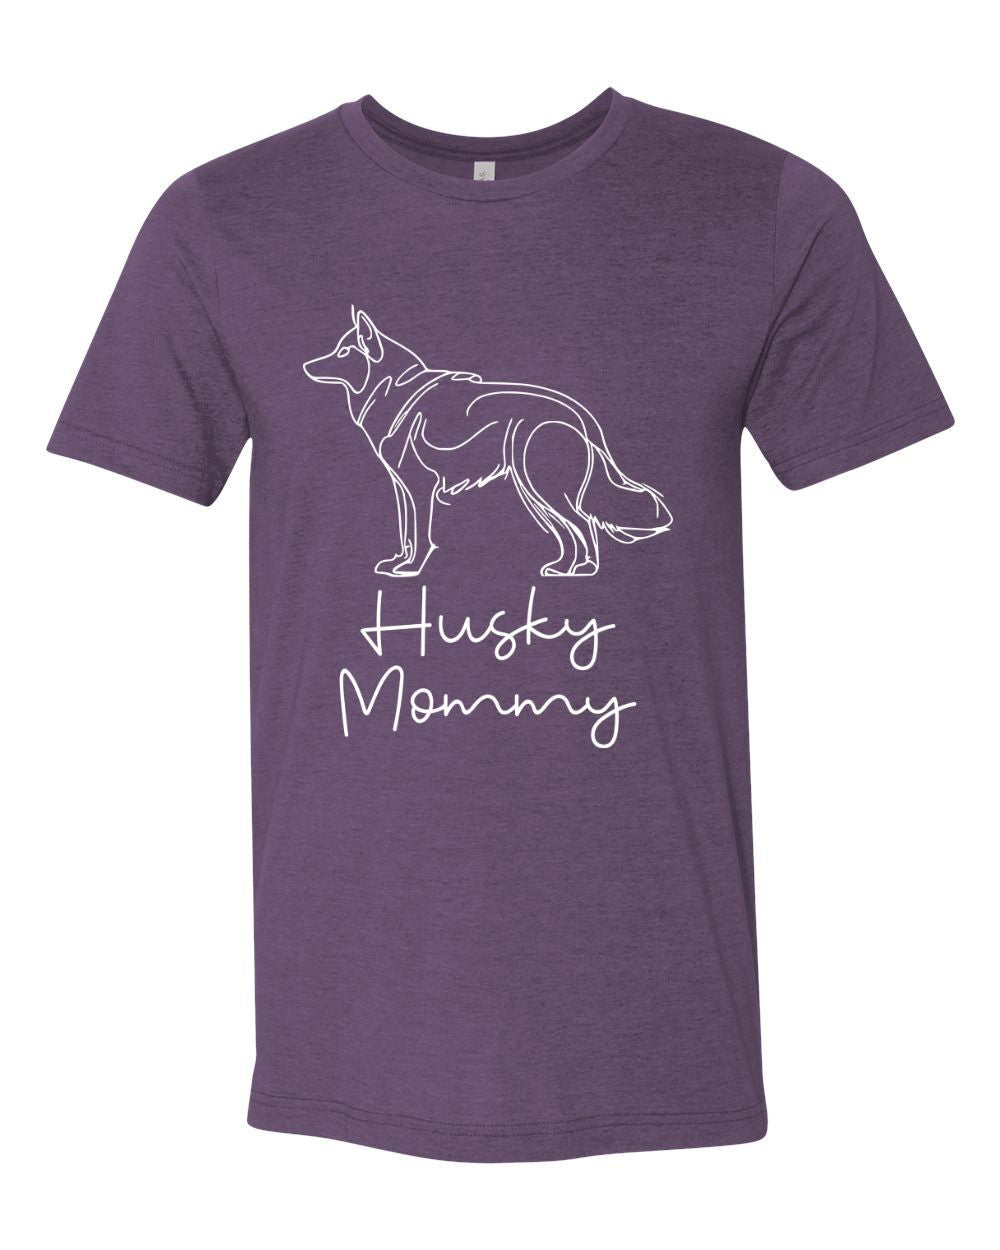 Husky Mommy Version 1 T-Shirt